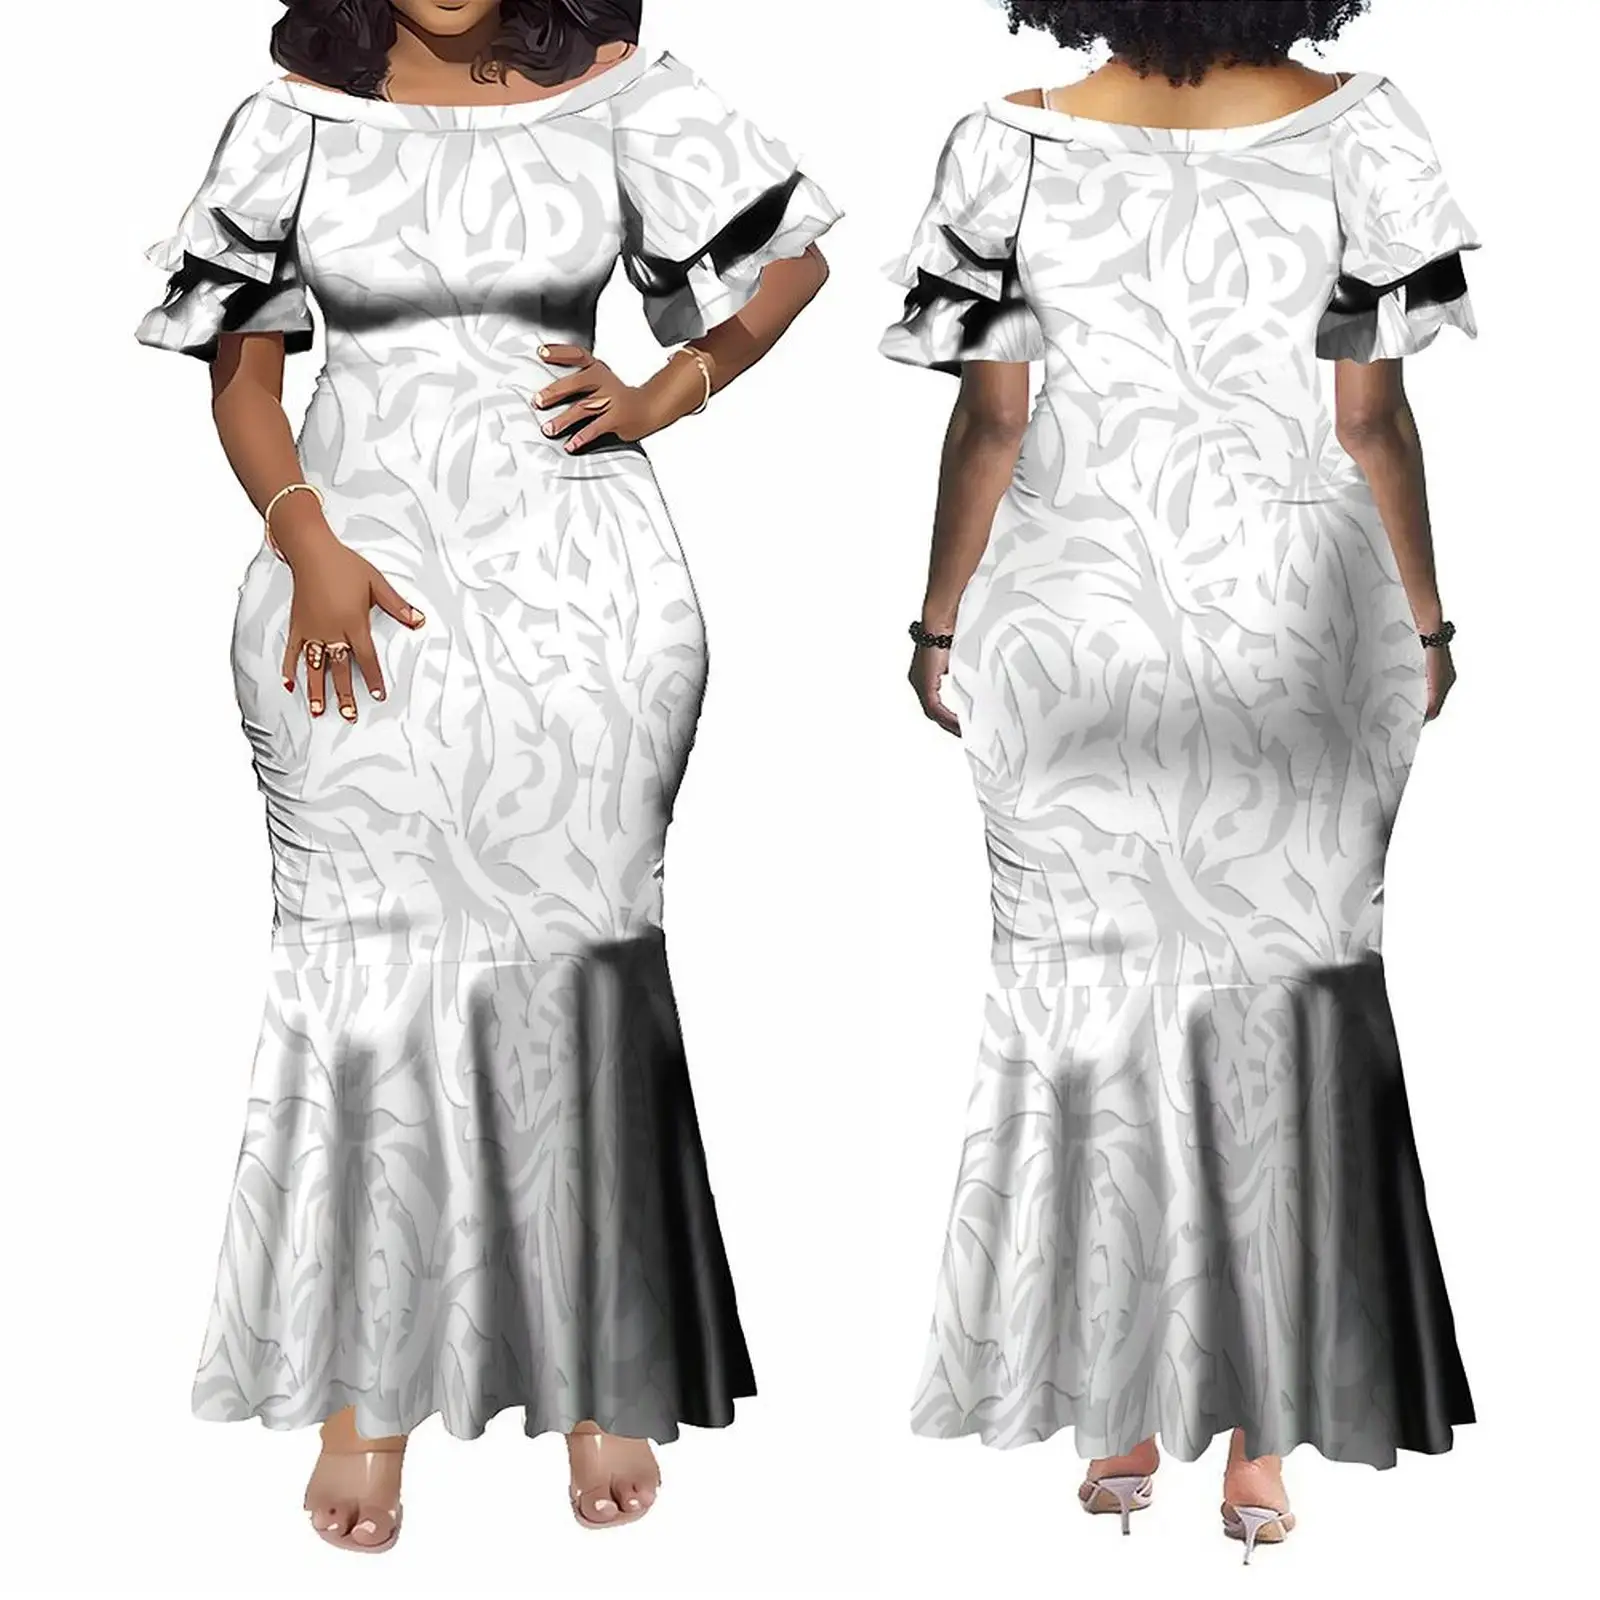 Di alta qualità Custom festa della mamma disegno bianco polinesiano tribale sirena abito da sera di grandi dimensioni manica a forma di petalo femminile abito Samoan